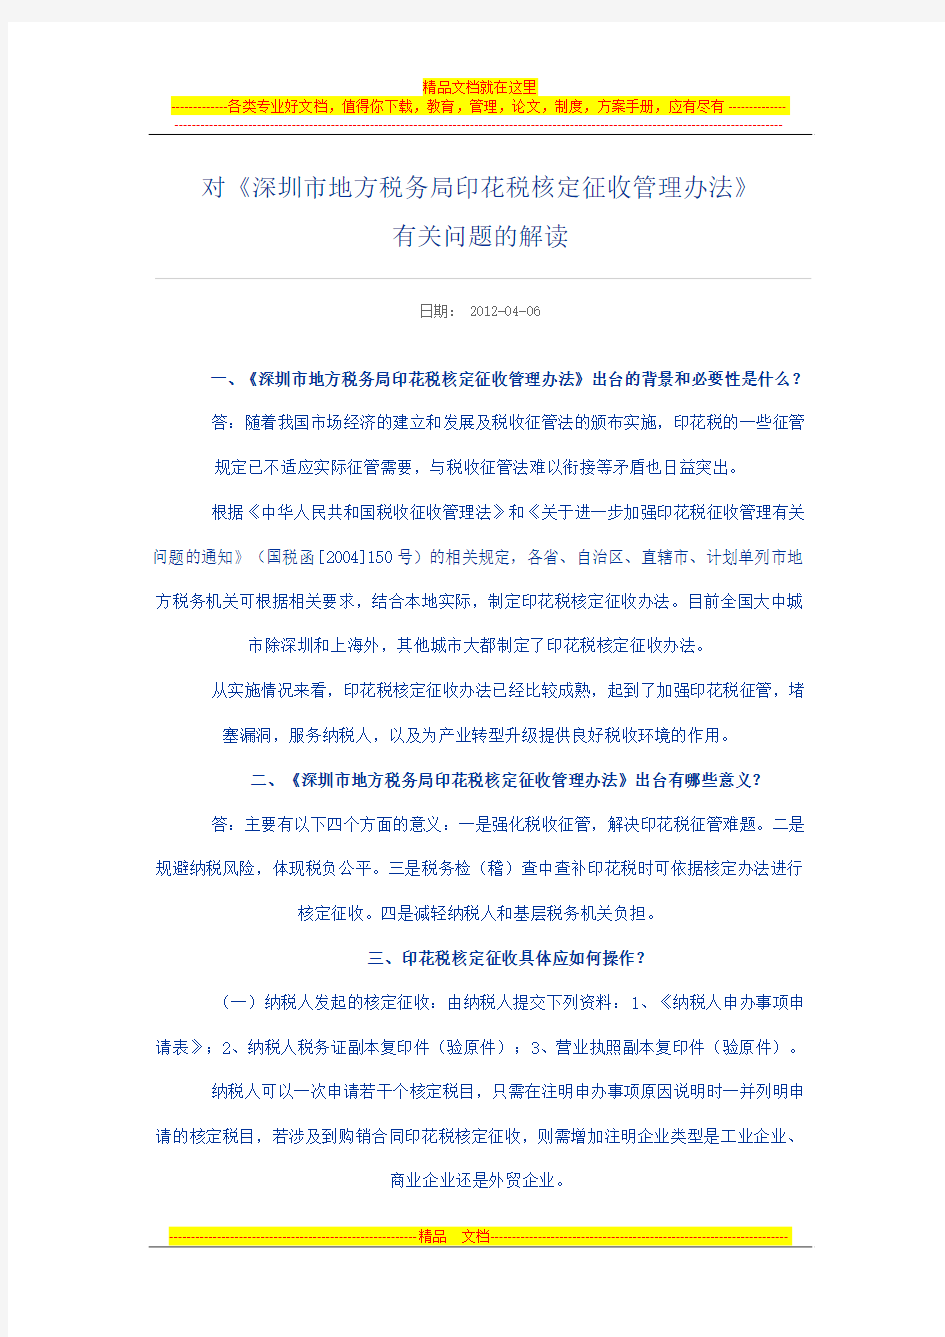 《深圳市地方税务局印花税核定征收管理办法》